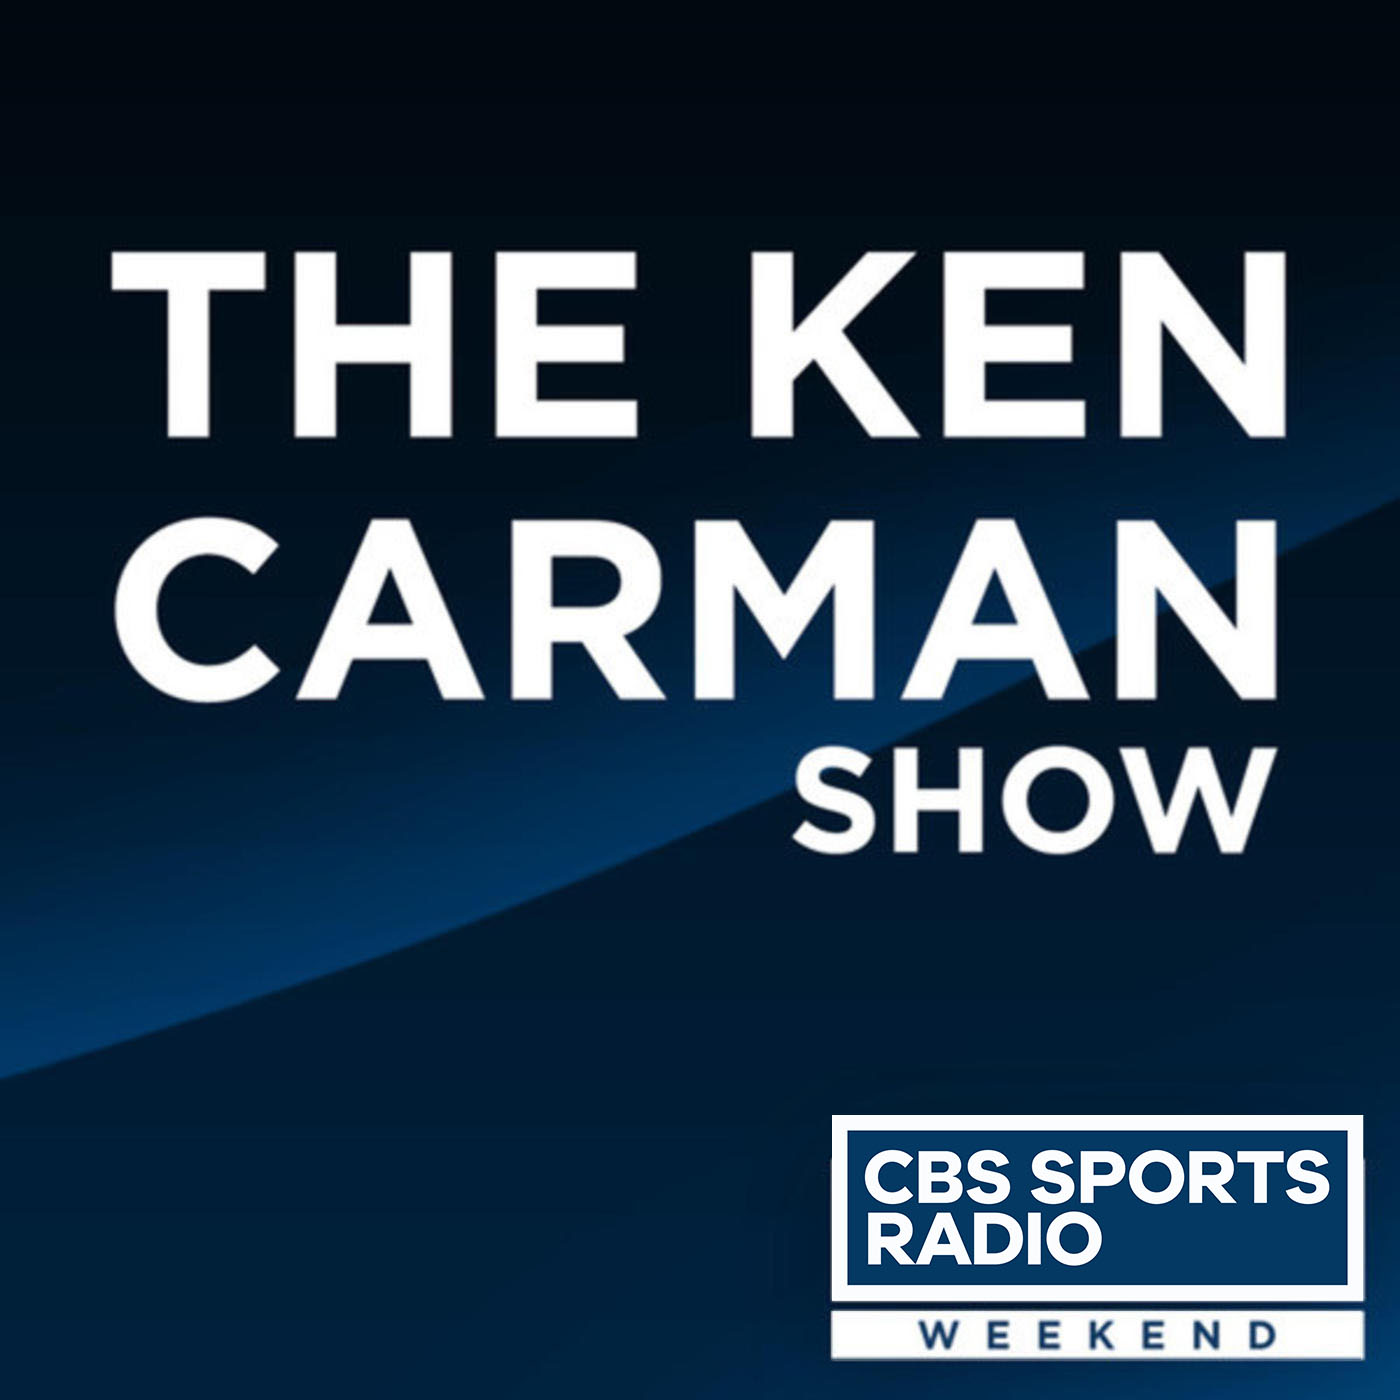 The Ken Carman Show 2-15-20 Jason La Canfora, CBS Sports